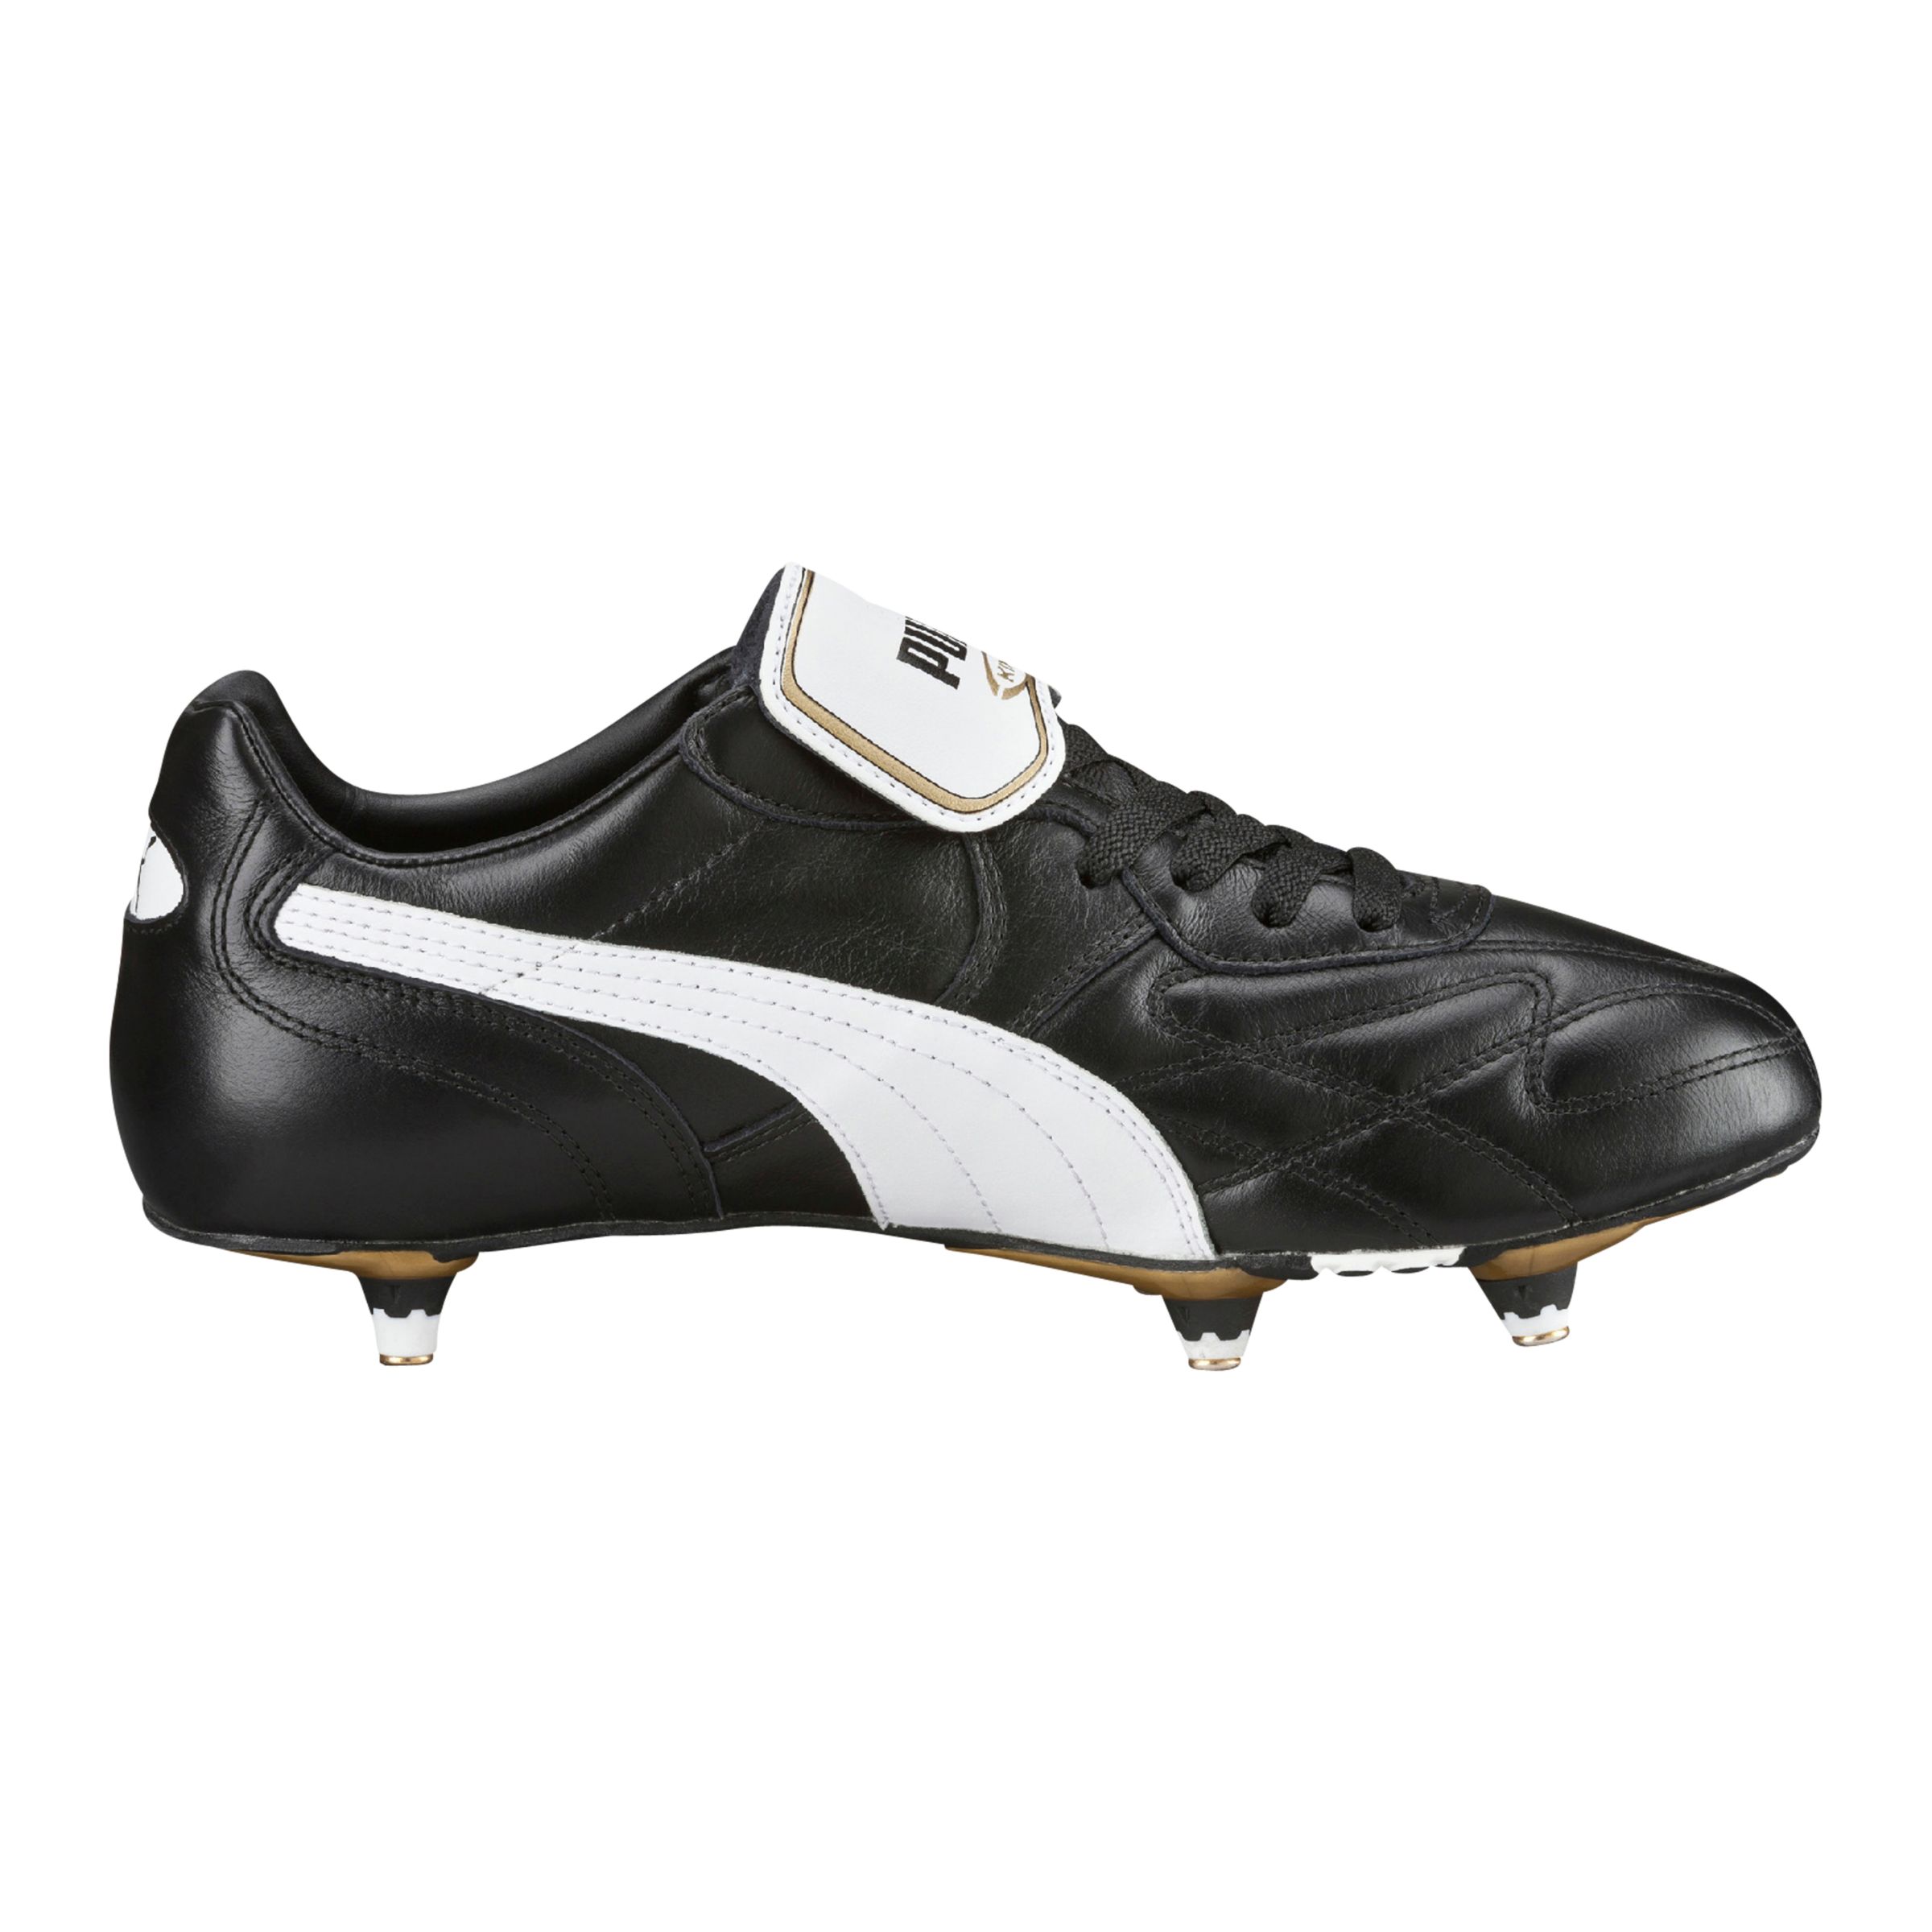 Puma King Pro Football Boots, Black